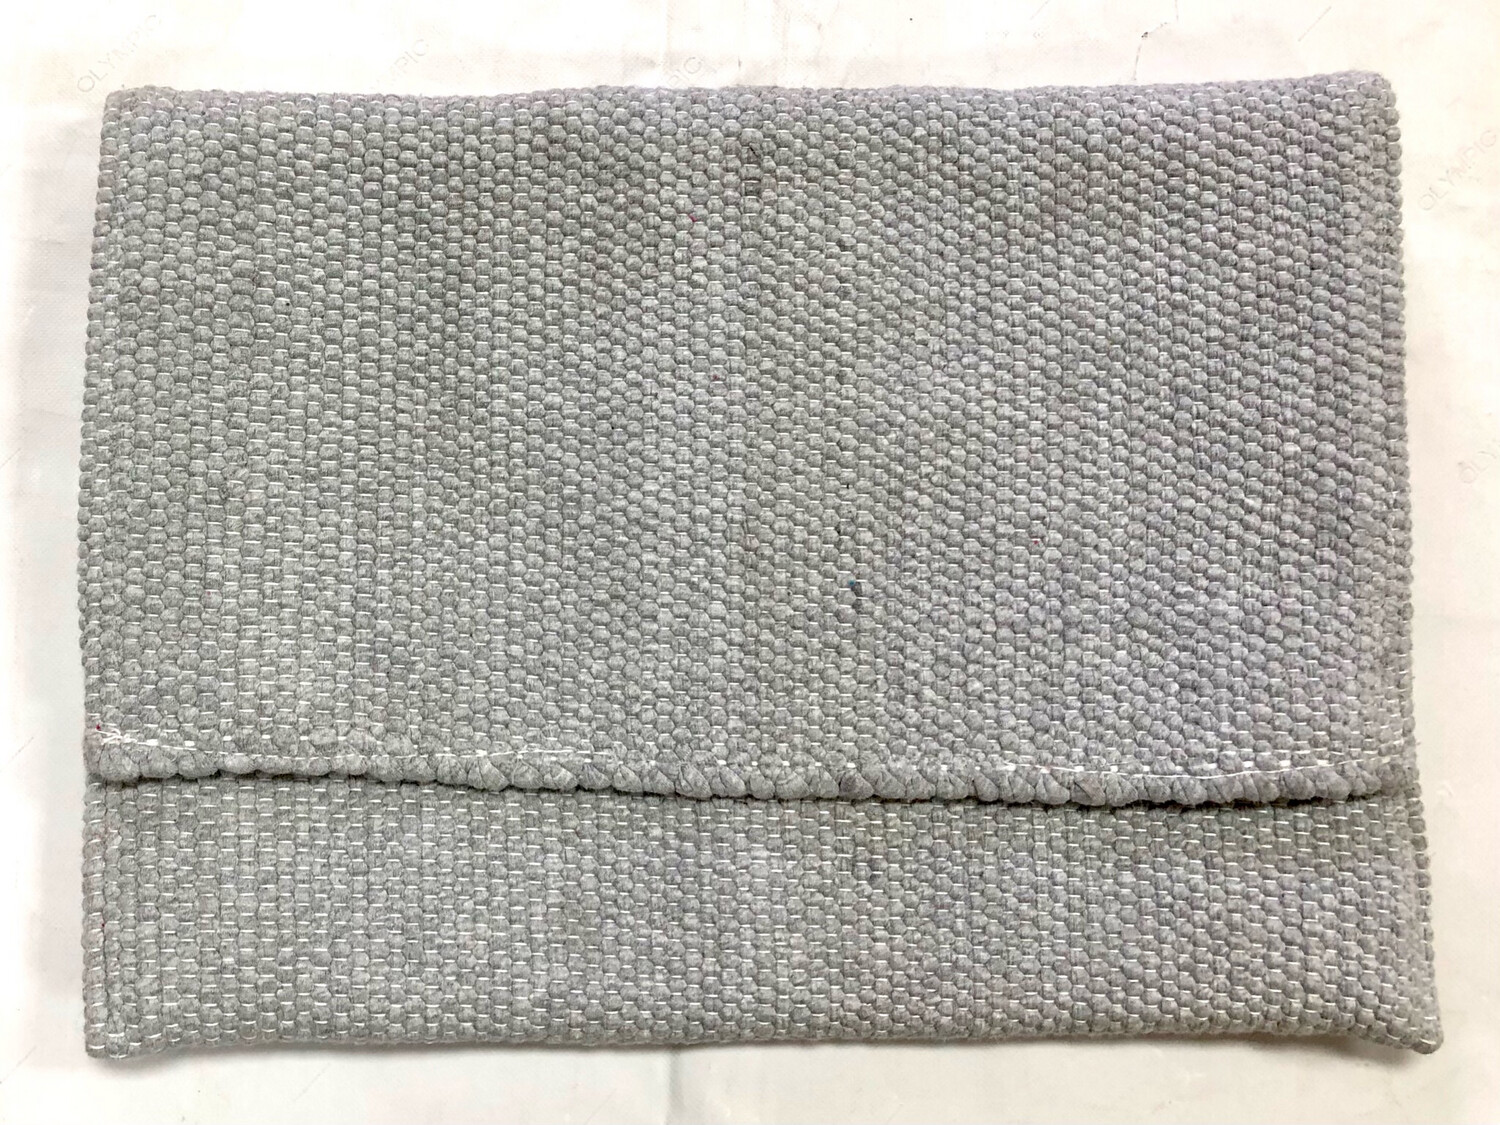 Woven Laptop Sleeve - Plain Fabric / 27-30*37-40 cm / حافظة لابتوب من قماش سادة منسوج